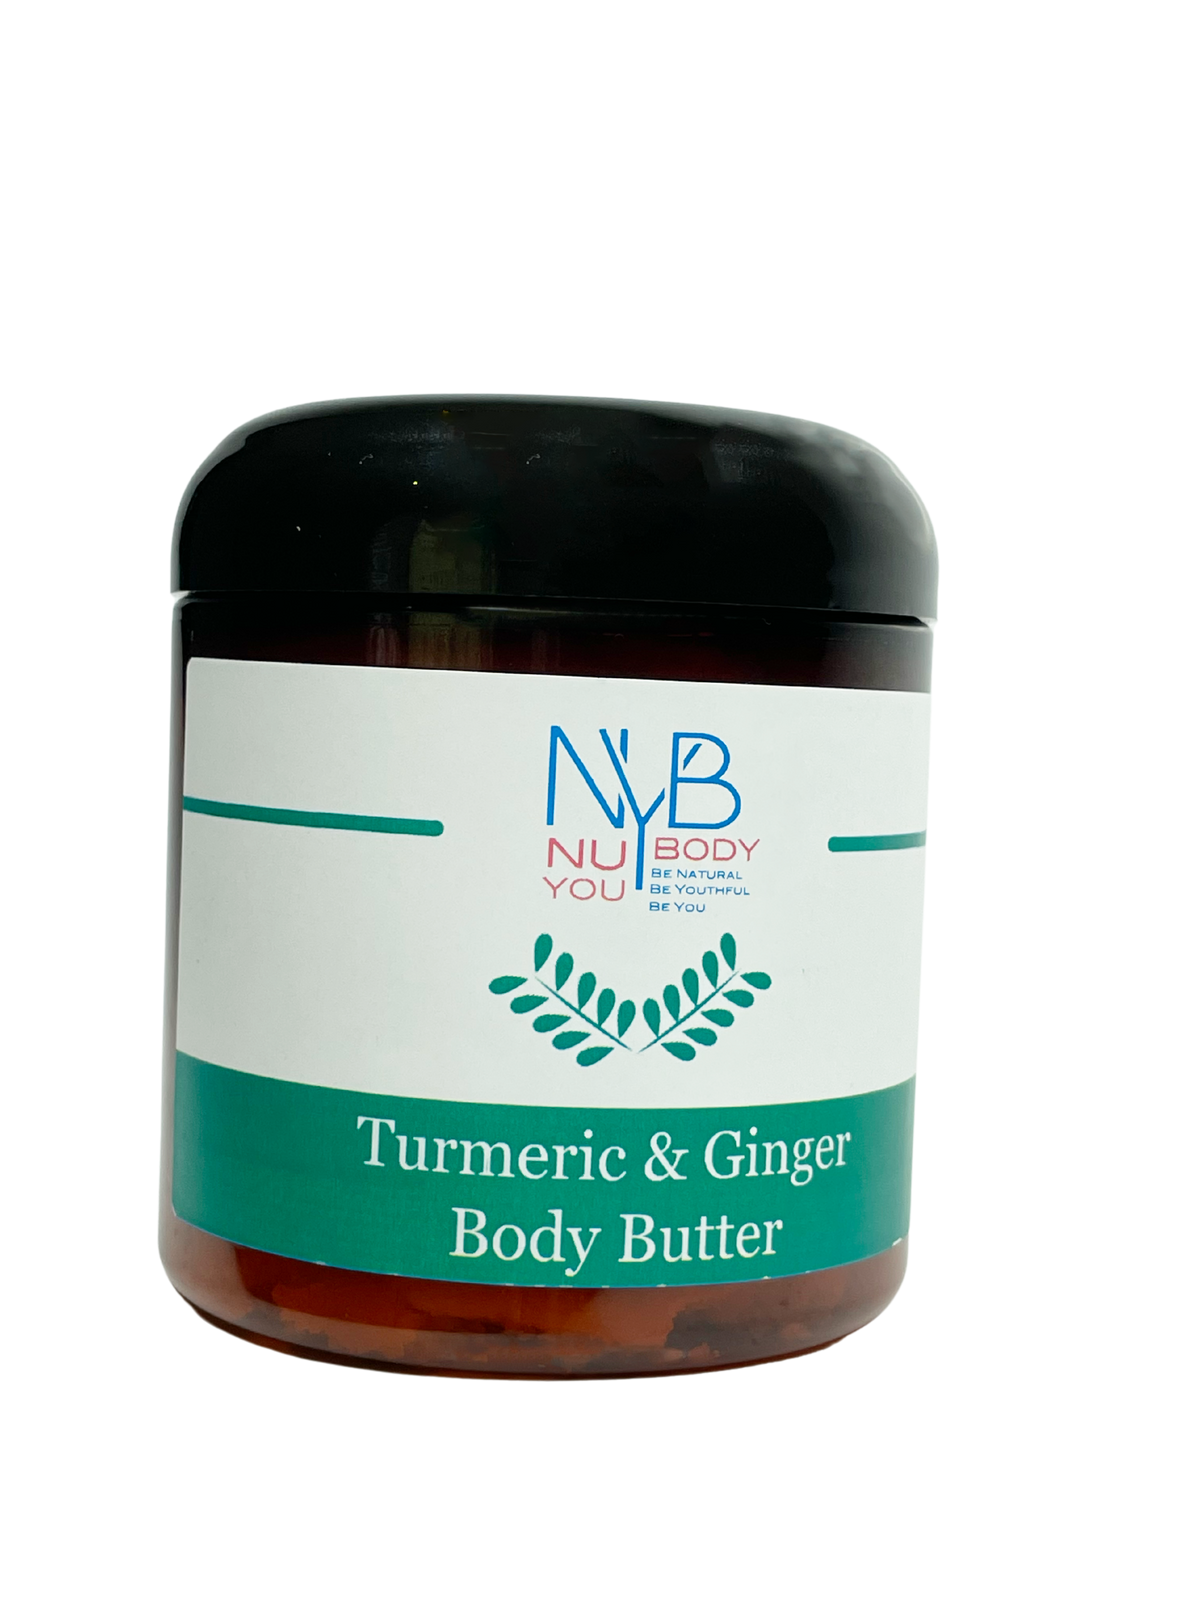 Turmeric & Ginger Body Butter